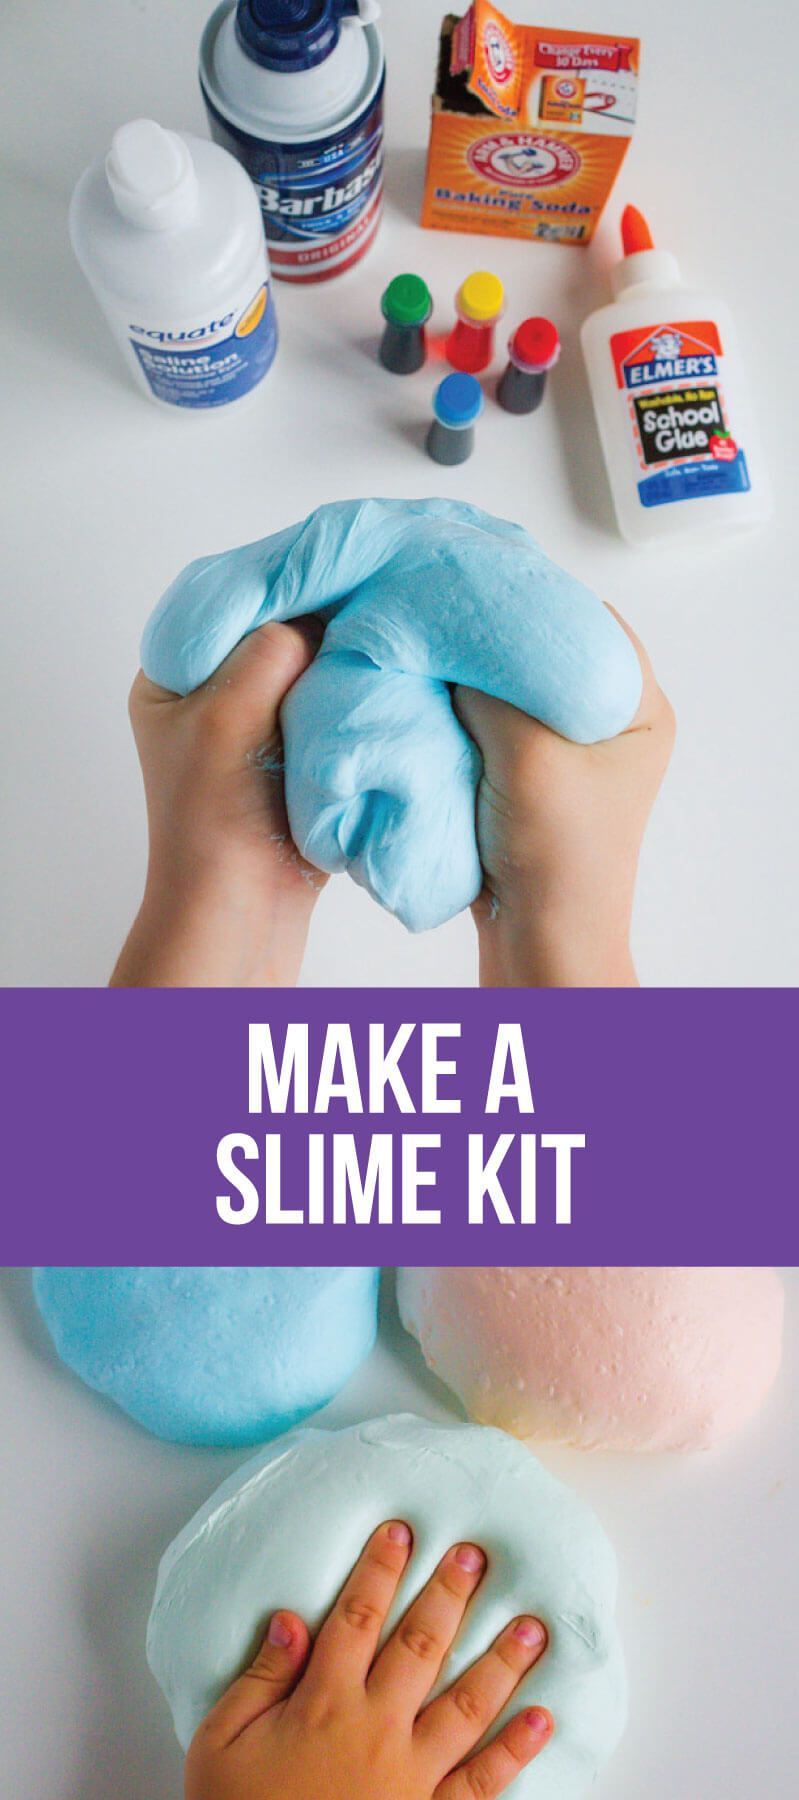 17 diy Slime kit ideas